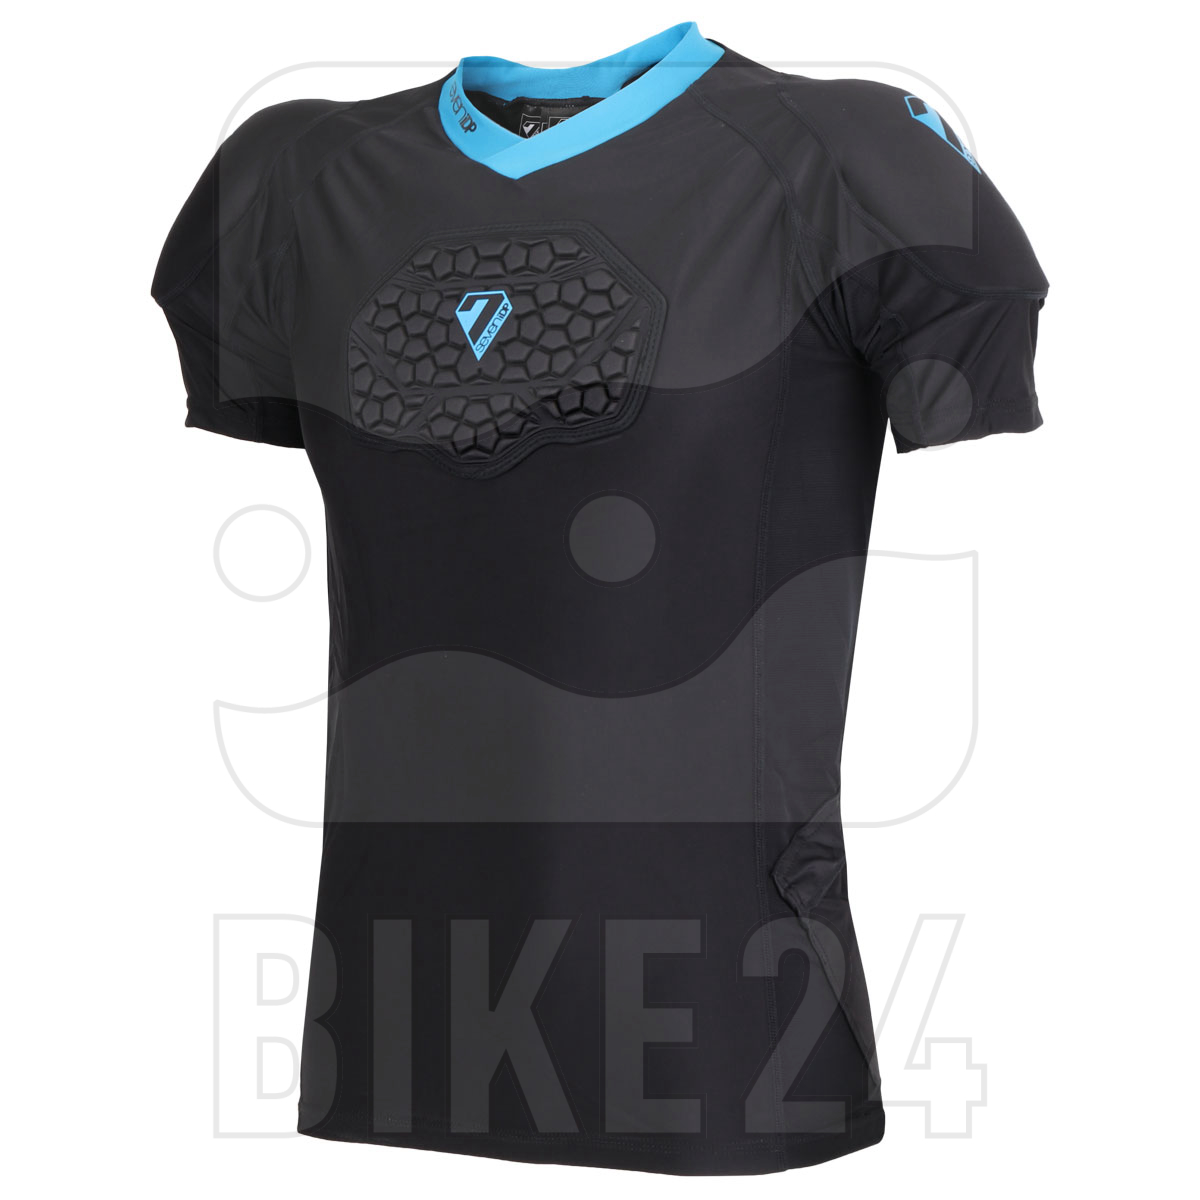 Produktbild von 7 Protection 7iDP Flex Body Suit Protektoren T-Shirt - schwarz-blau